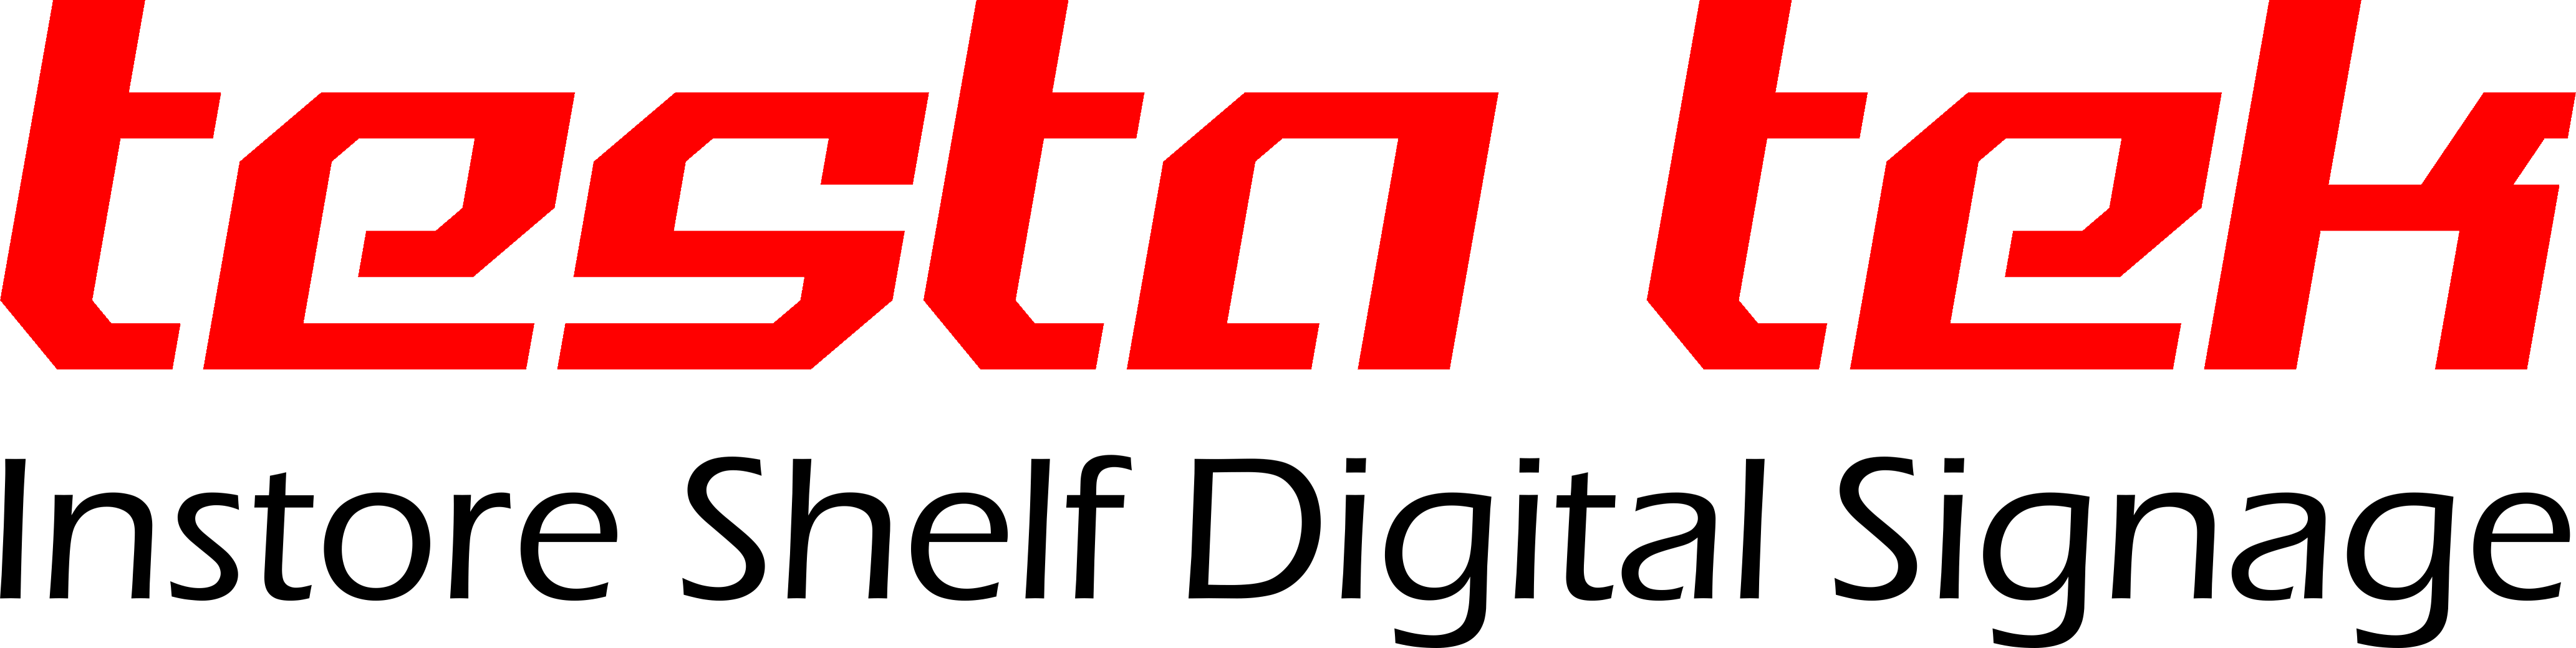 TESTATEK logo V2 Transparent Background